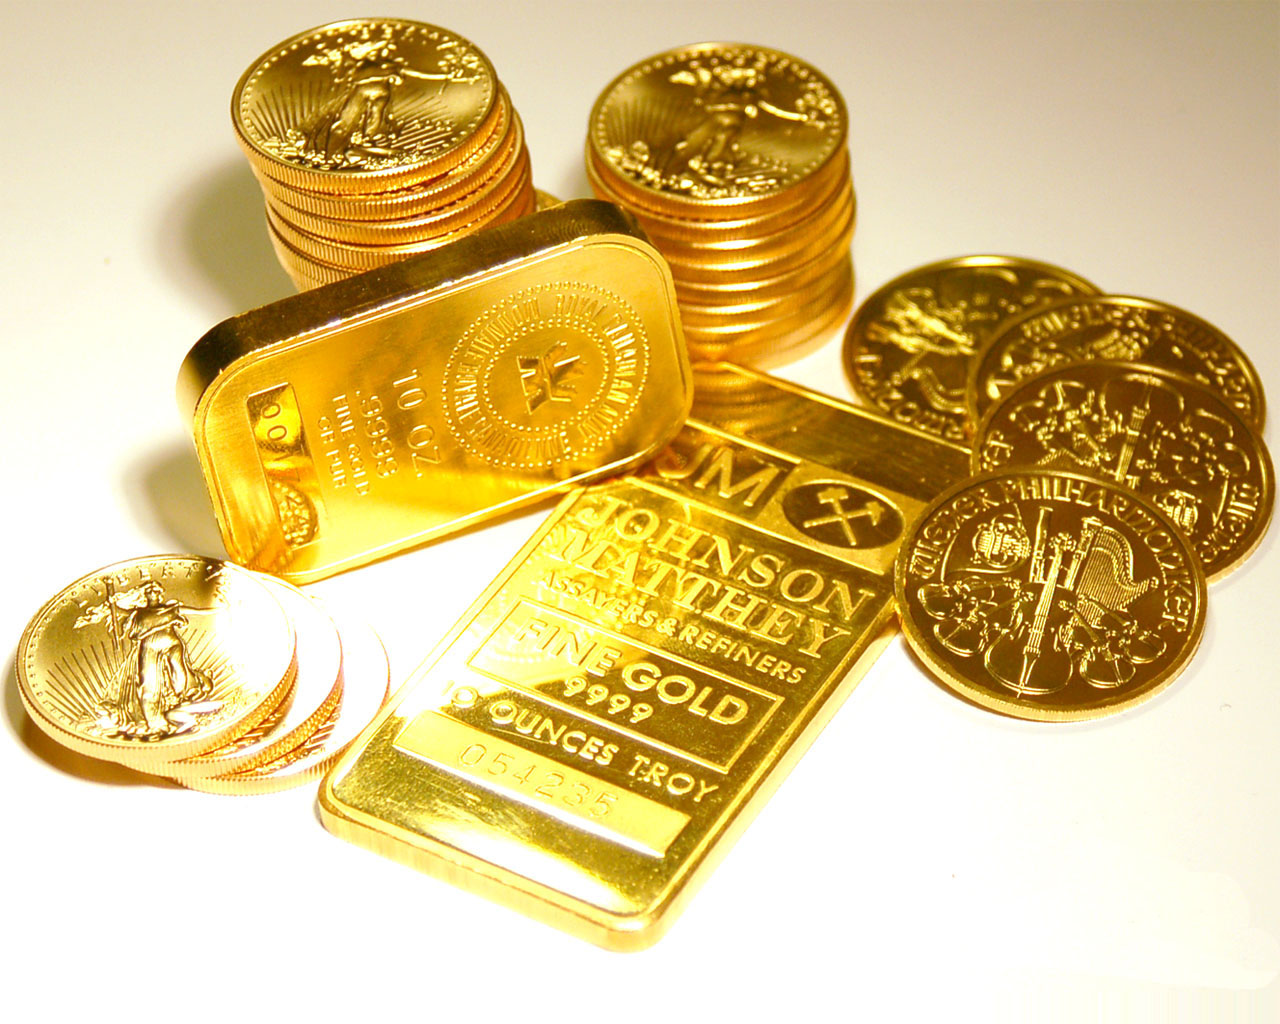 قیمت طلا، قیمت سکه و قیمت ارز امروز